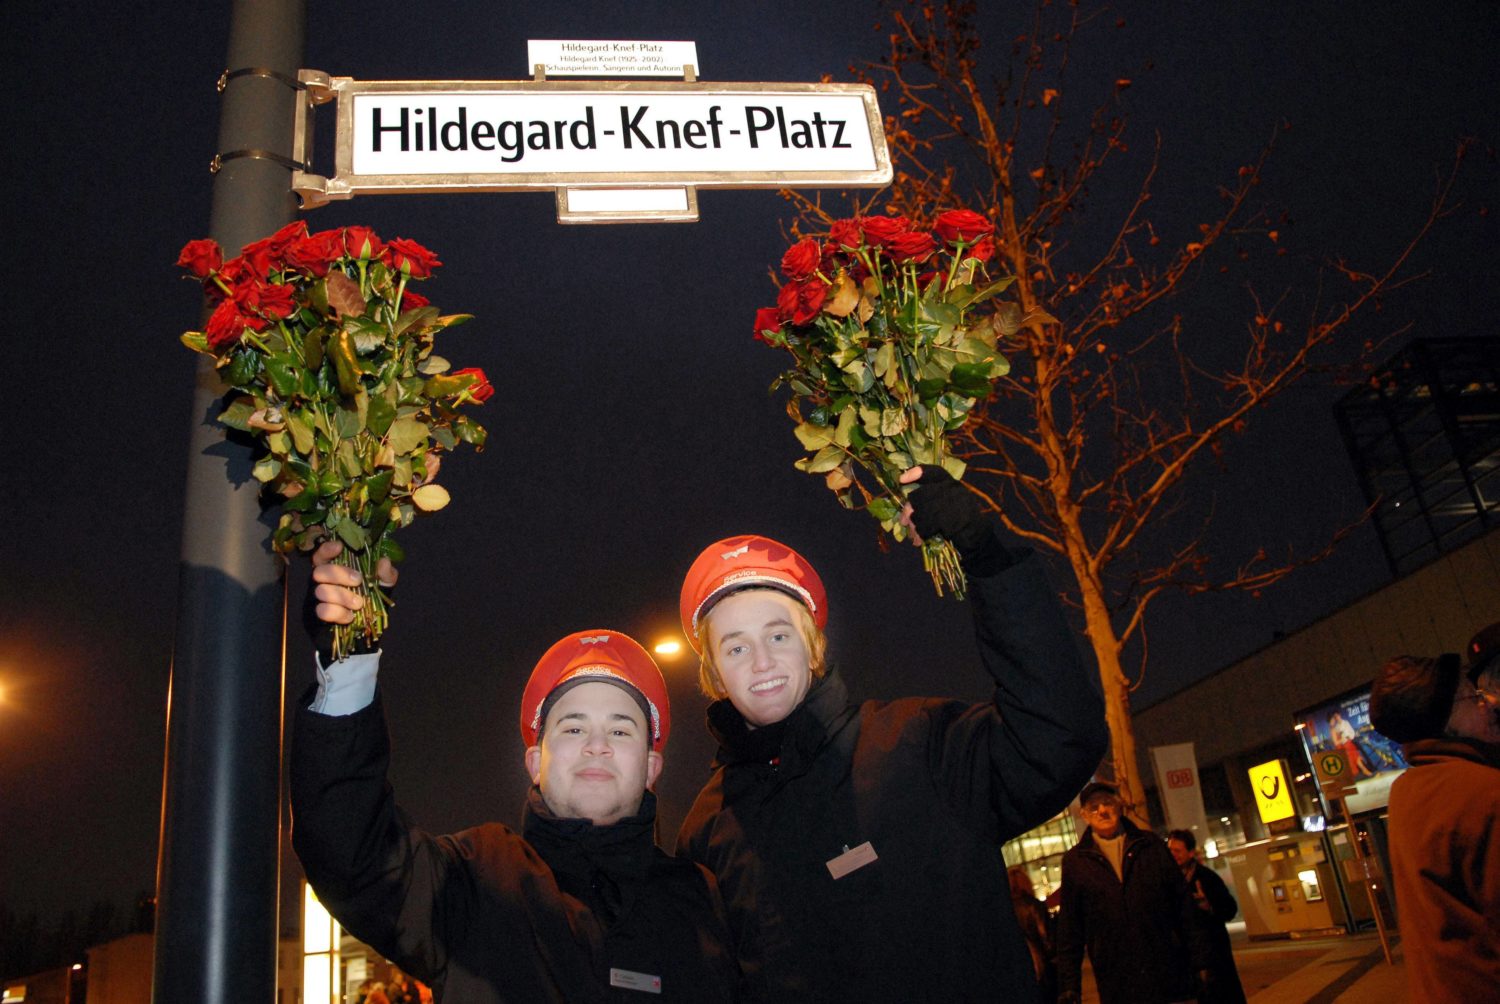 DB-Mitarbeiter*innen feiern am 17. Dezember 2007 die Einweihung des Hildegard-Knef-Platzes. Foto: Imago Images/suedraumfoto